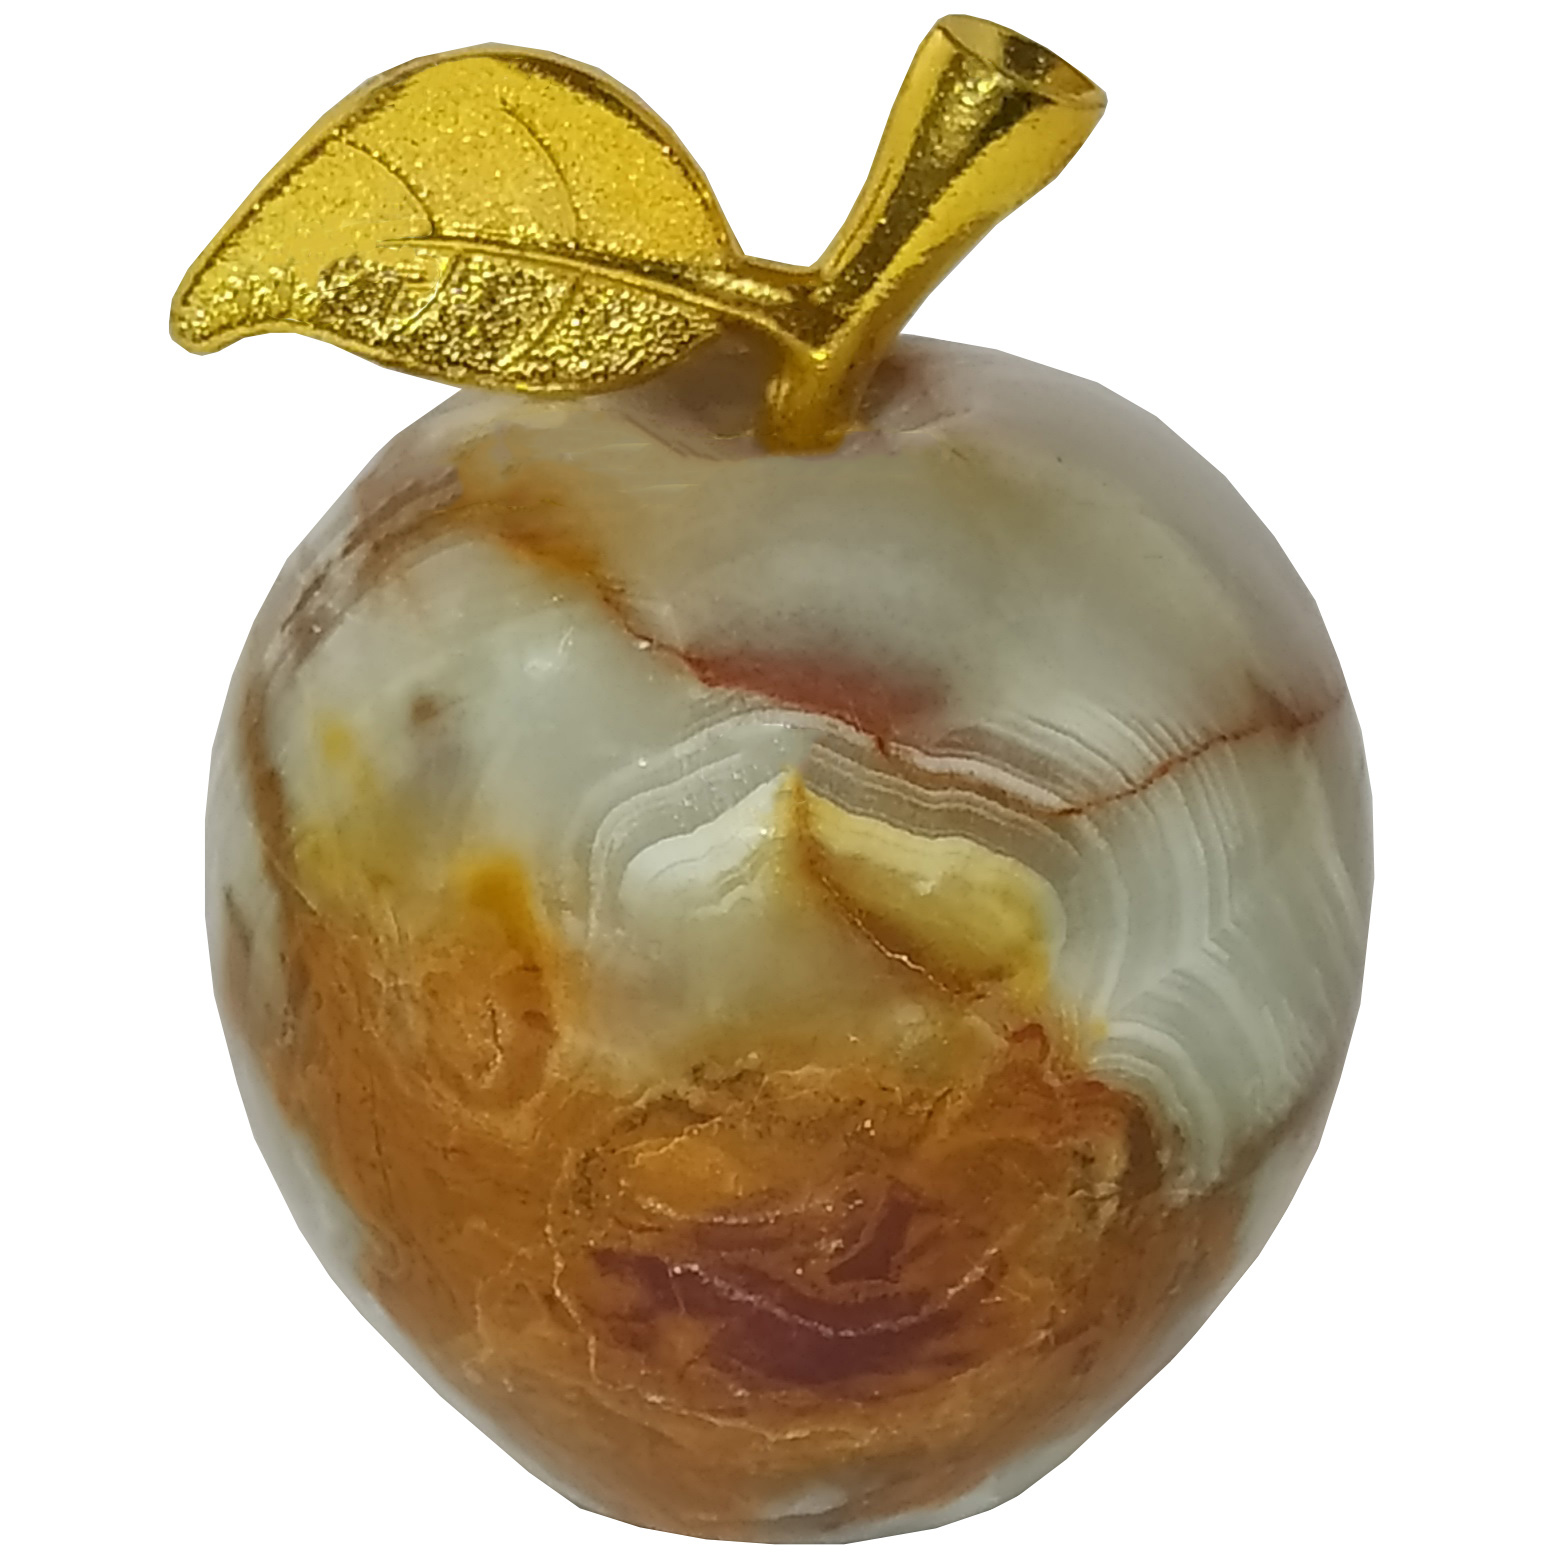  میوه تزئینی طرح سیب کد M1272